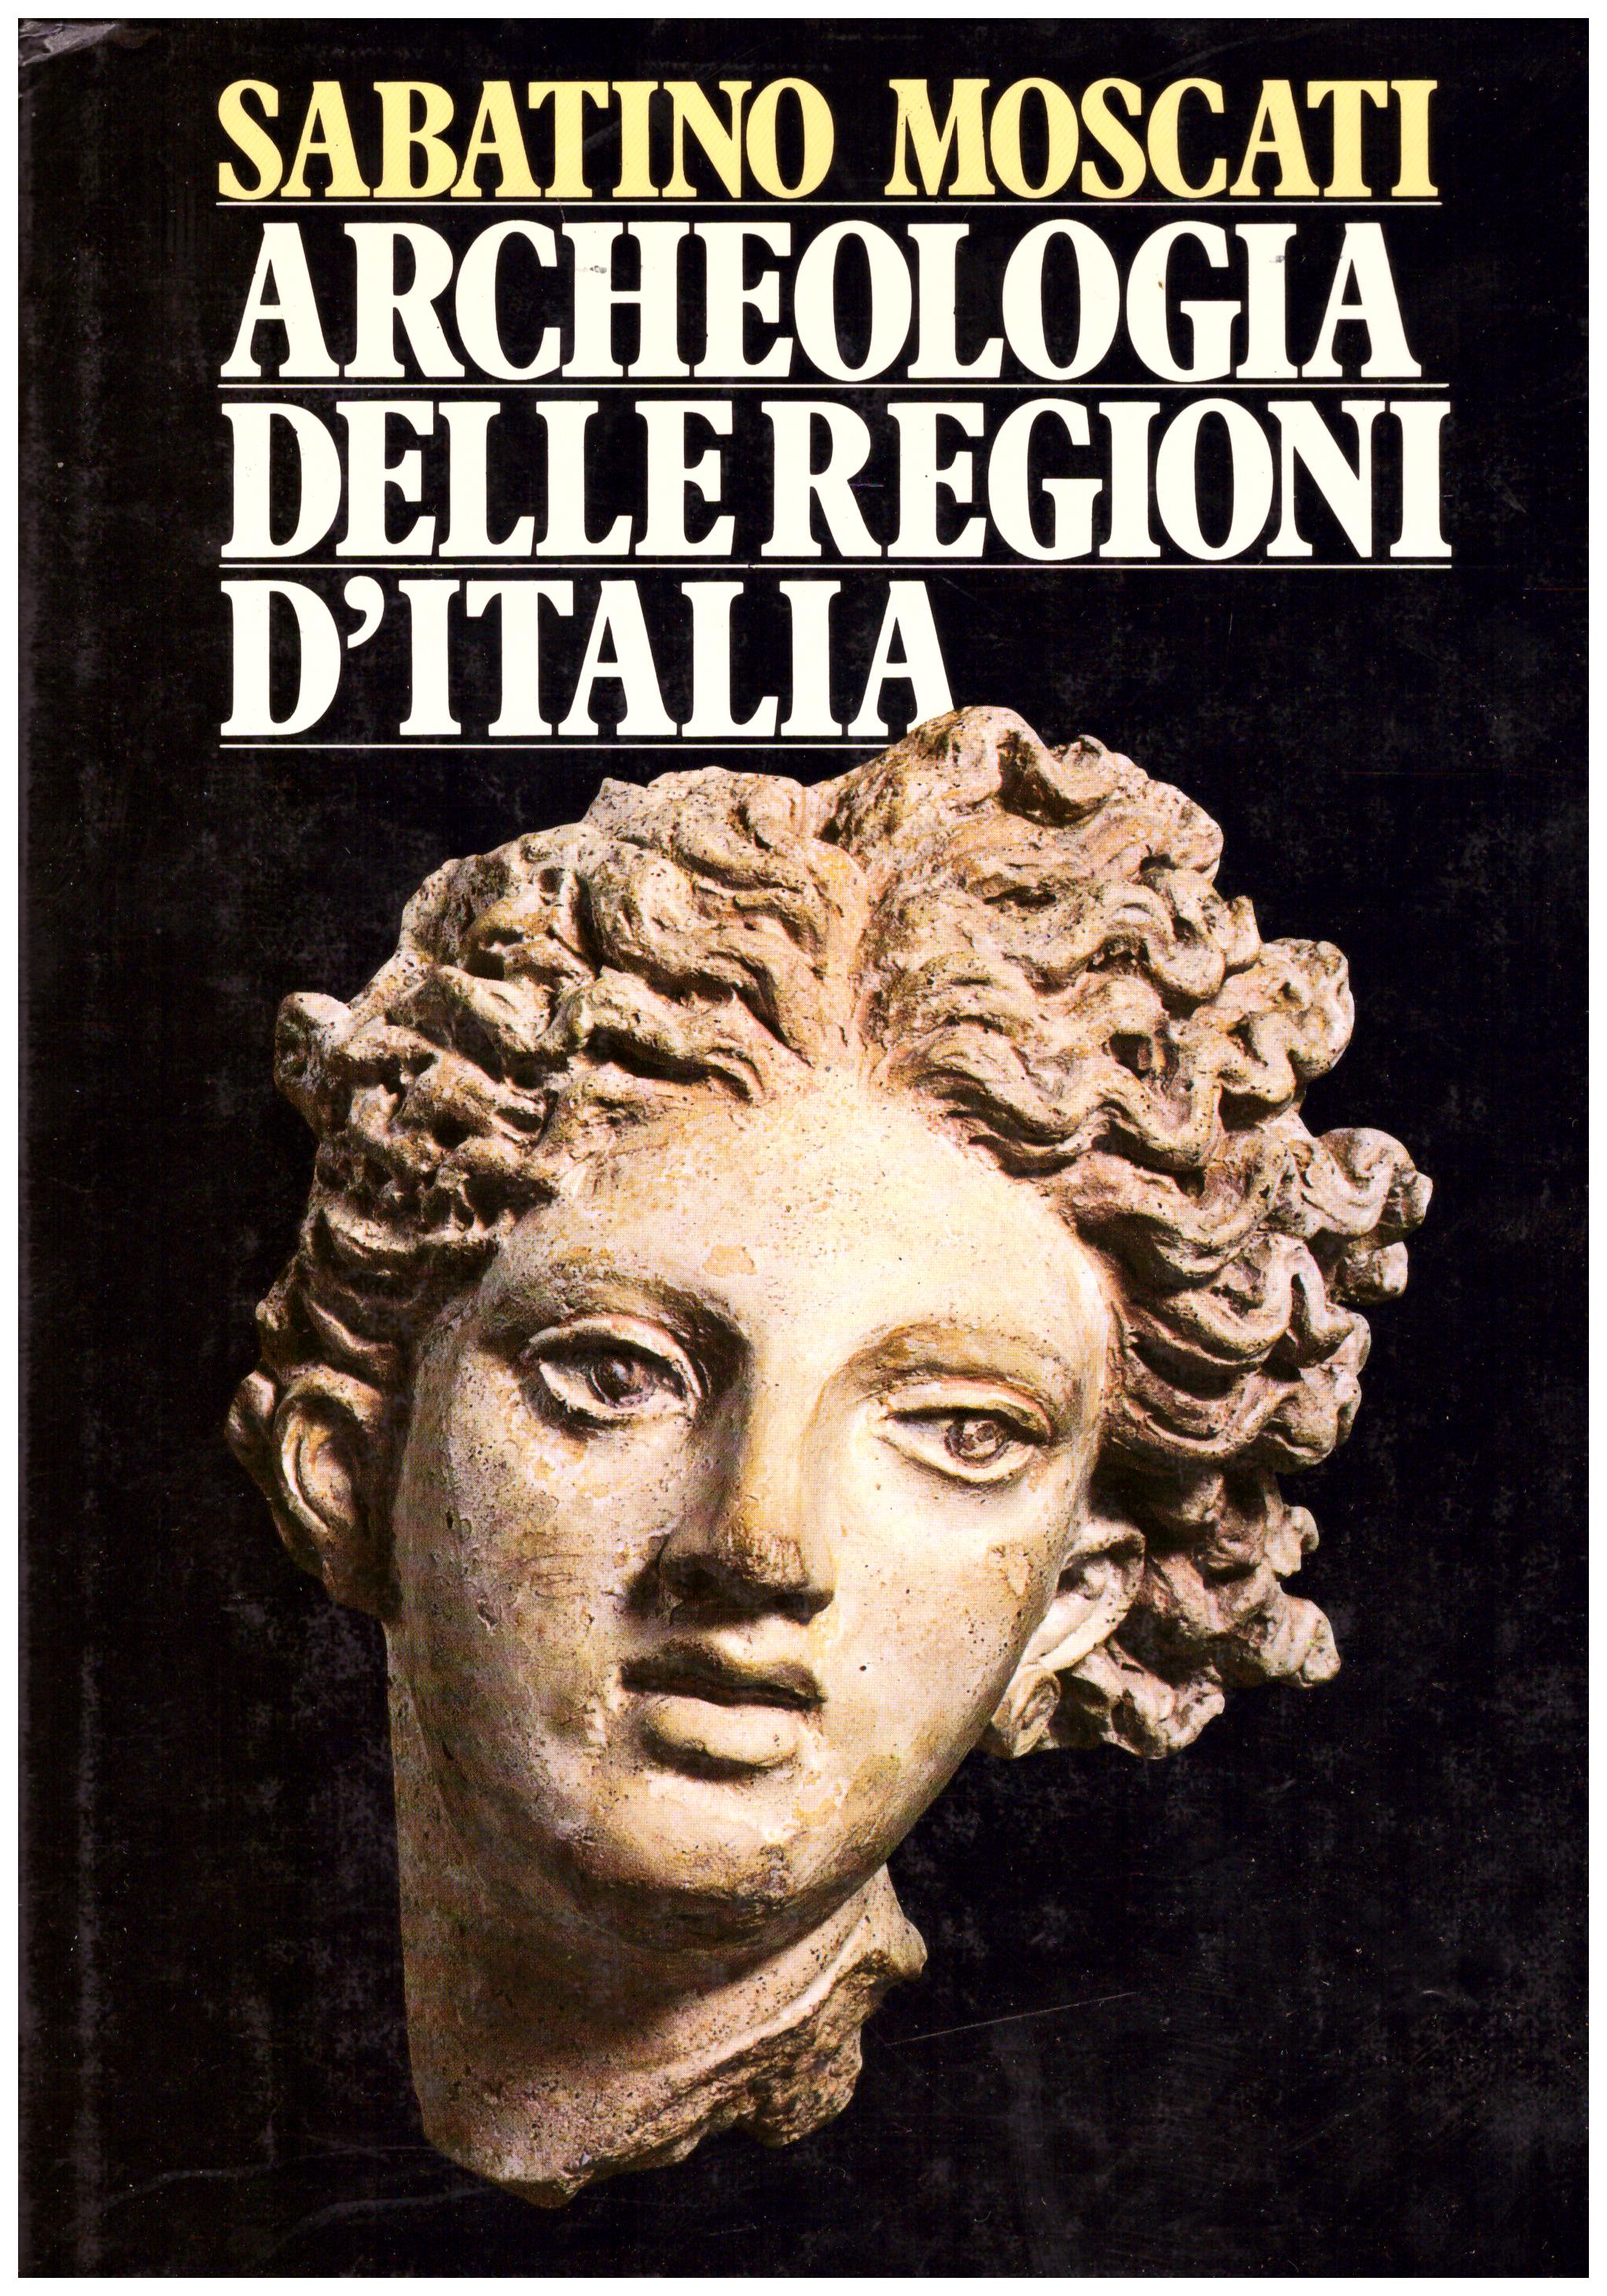 Titolo: Archeologia delle regioni d'Italia Autore: Sabatino Moscati Editore: rizzoli 1984